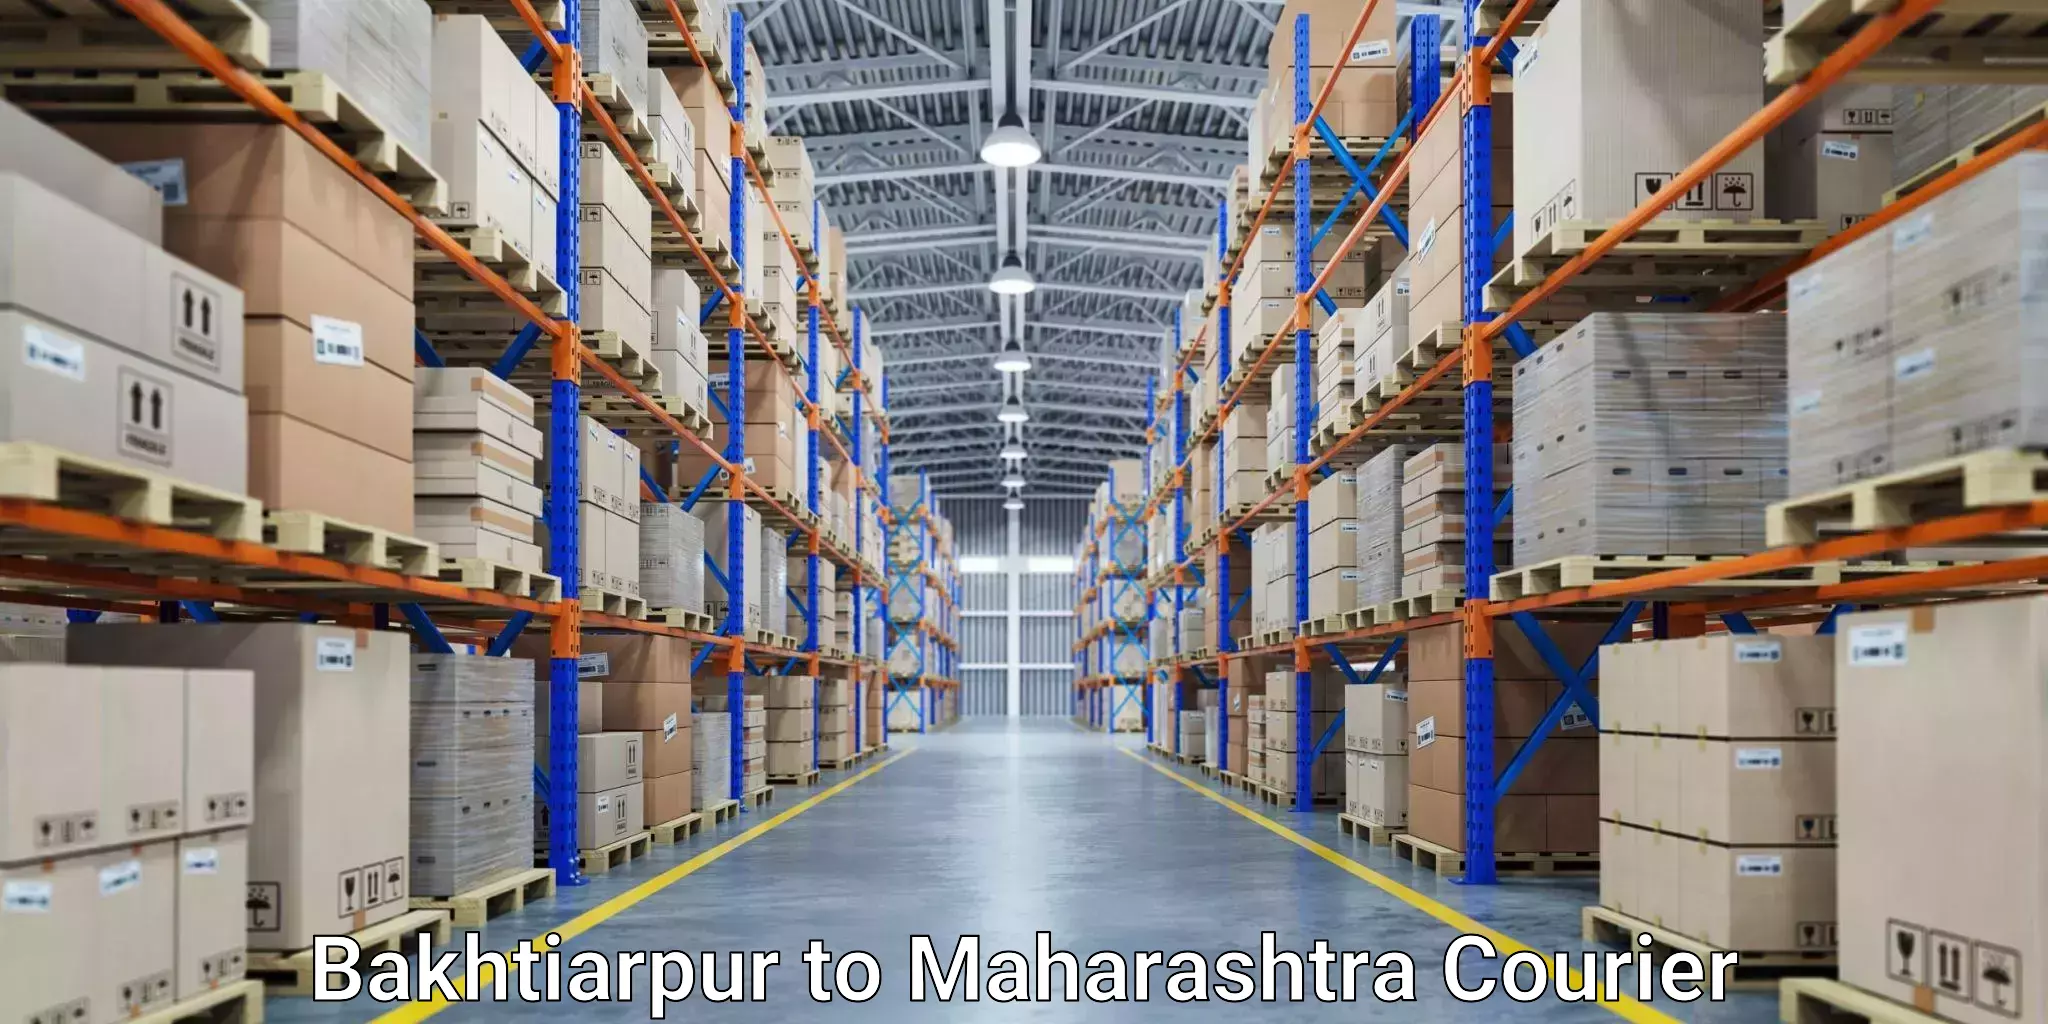 Courier rate comparison Bakhtiarpur to Mahur